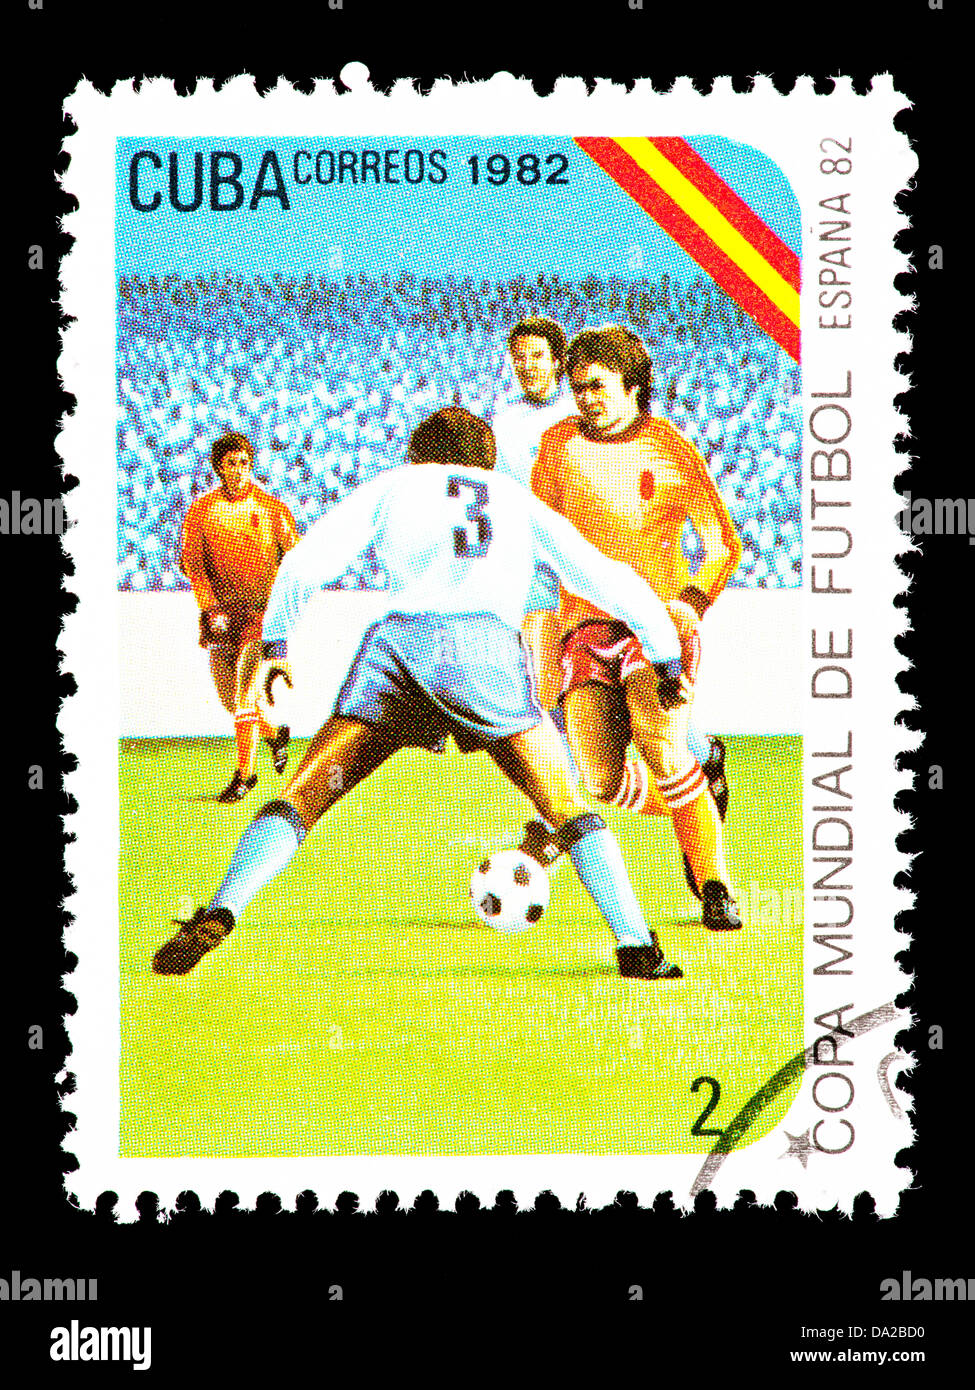 Timbre-poste représentant de Cuba joueurs football (soccer), émis pour la Coupe du Monde 1982 en Espagne. Banque D'Images